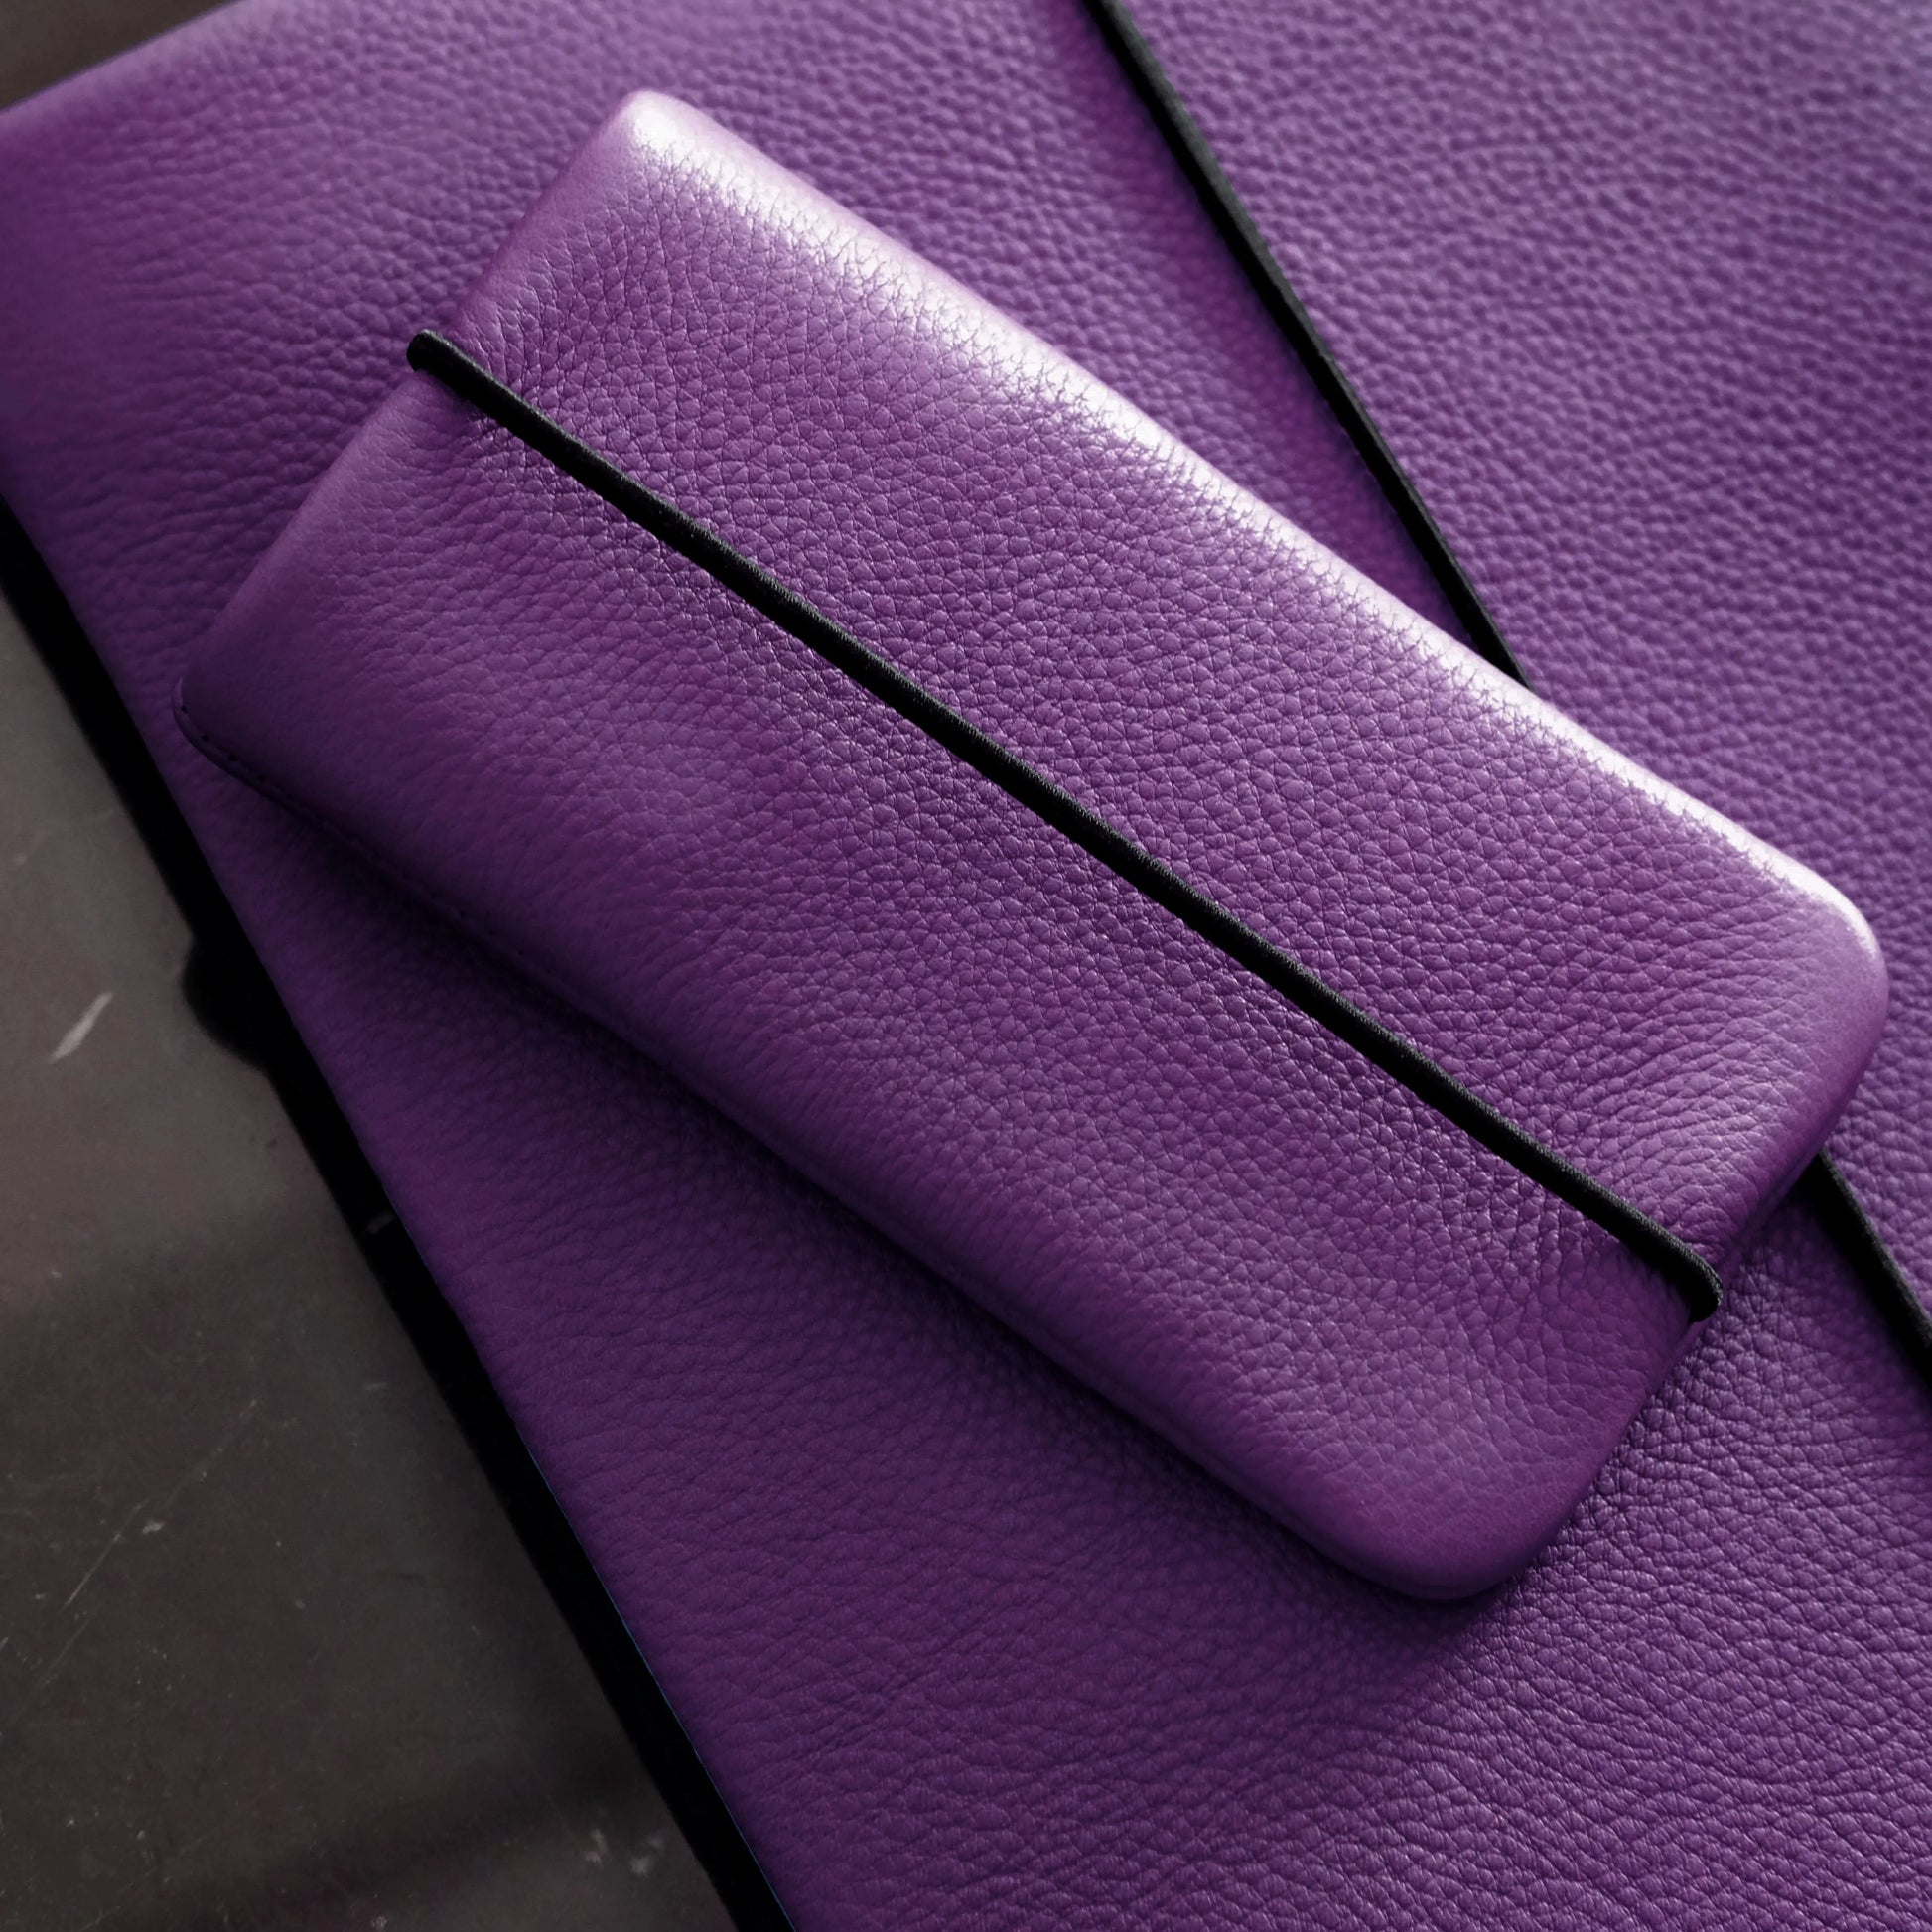 violette iPhonehülle aus Leder liegt auf der passenden Macbookhülle aus Leder